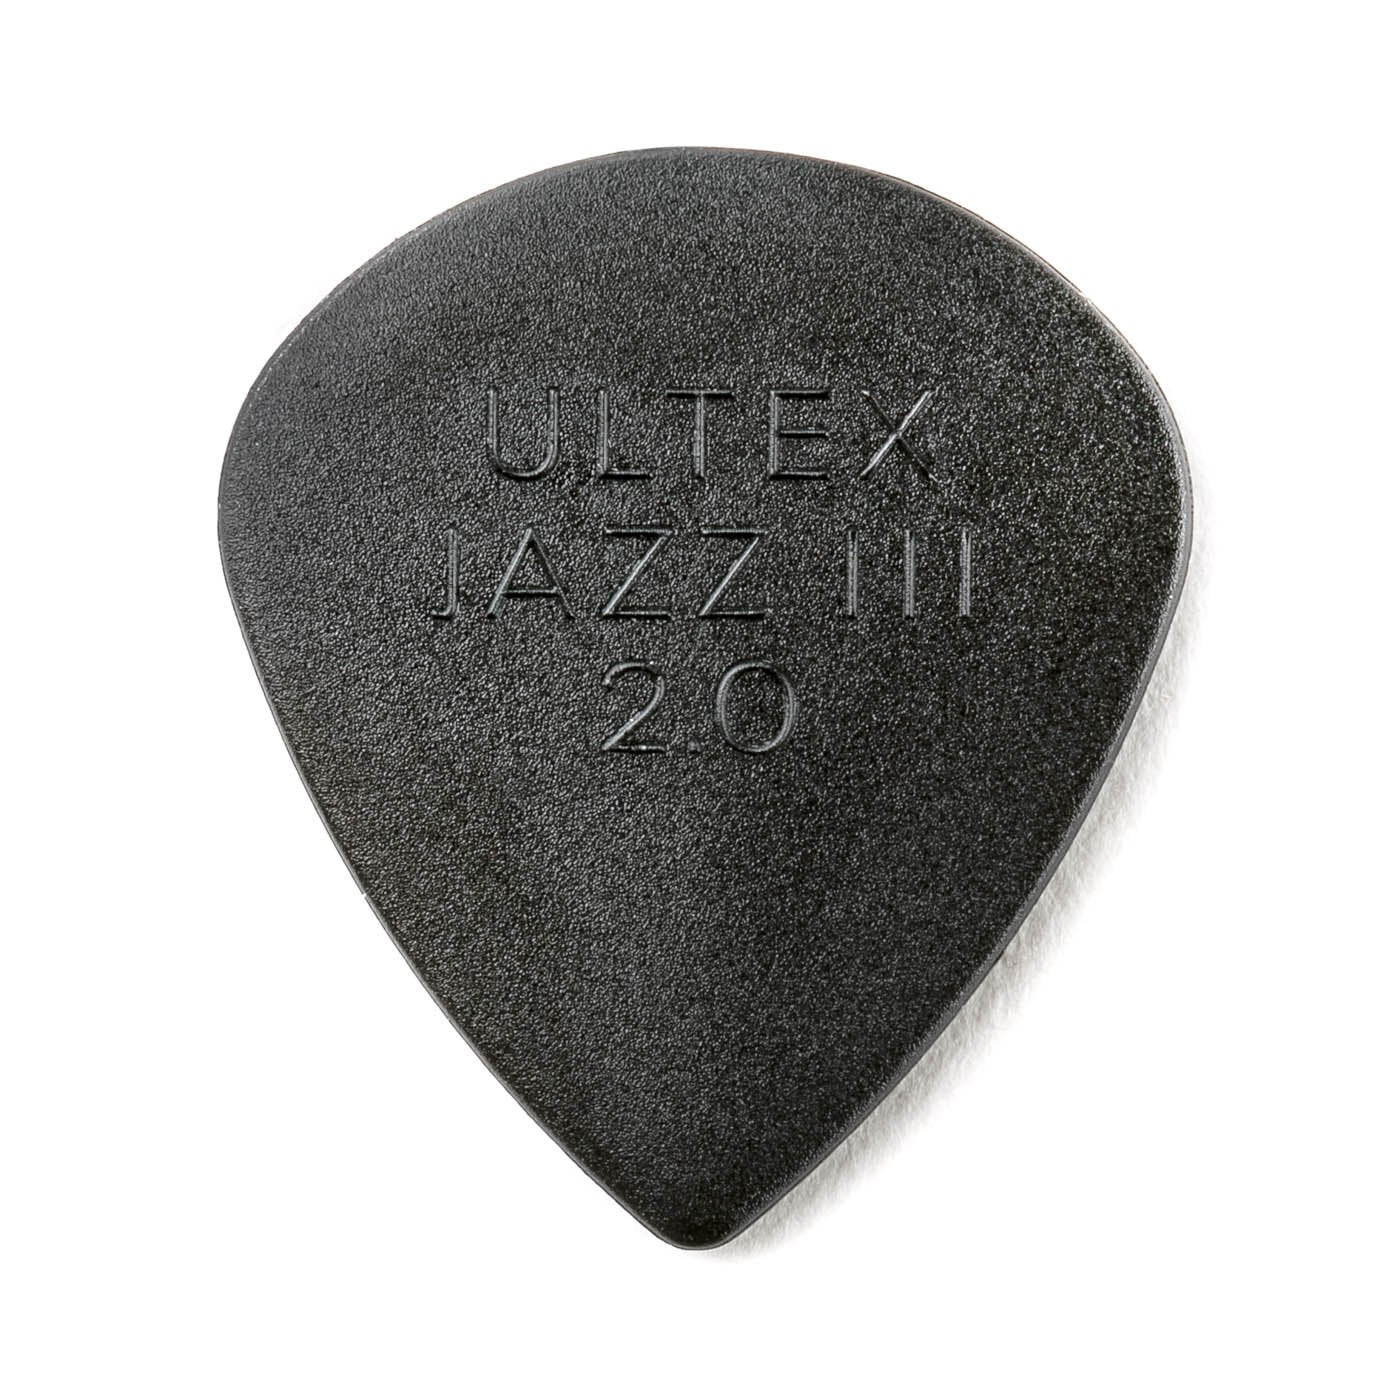 Dunlop JP420 - 2.00mm Ultex Jazz III Picks 6pk